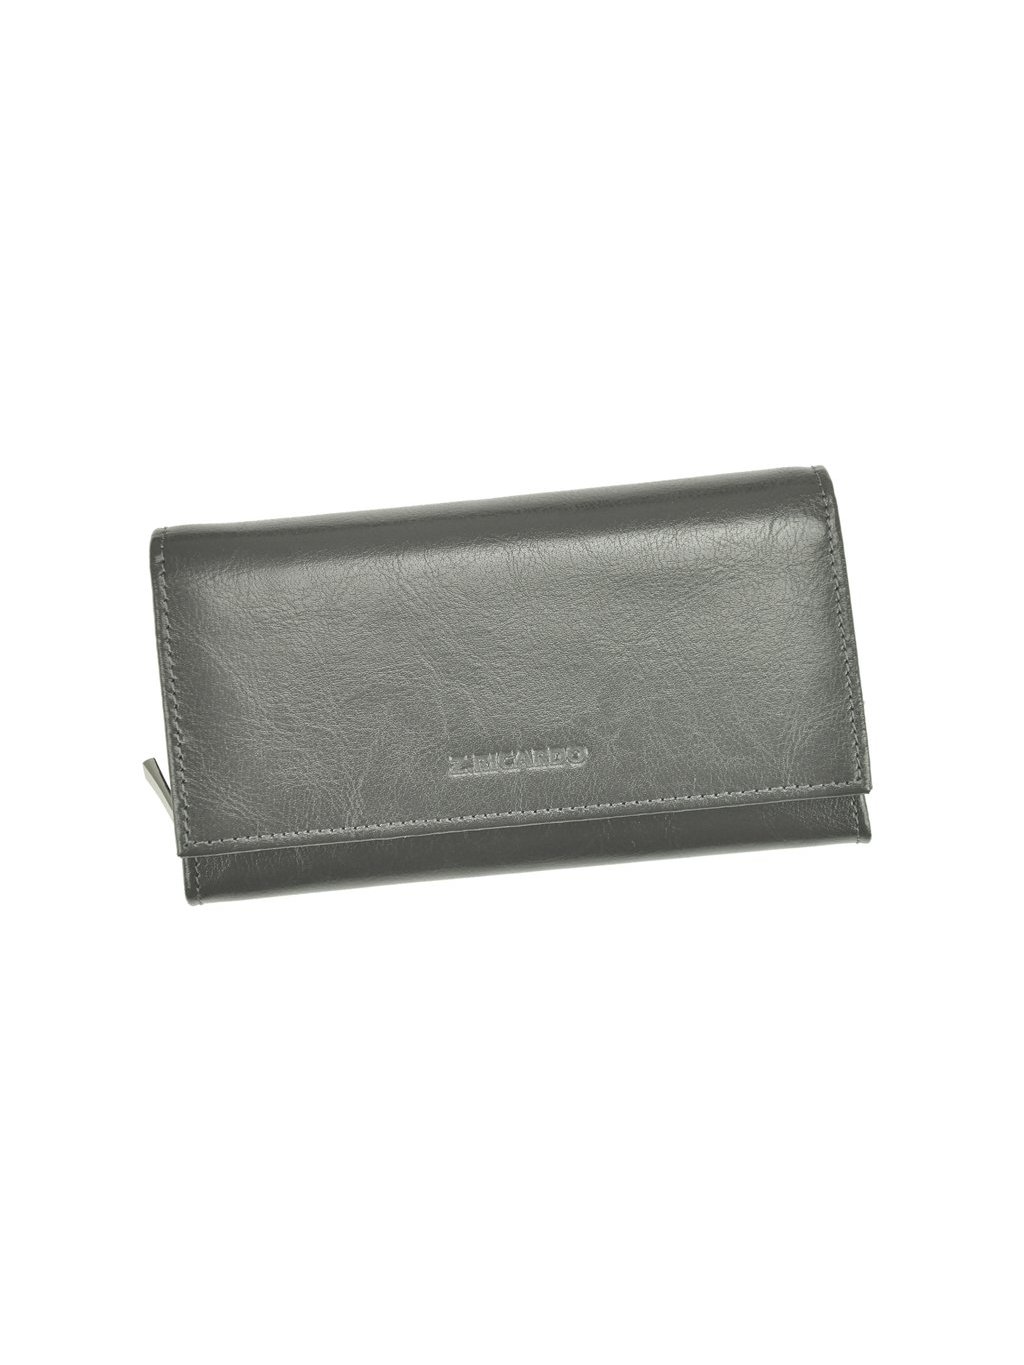 Dámská kožená peněženka Z.Ricardo 035 šedá